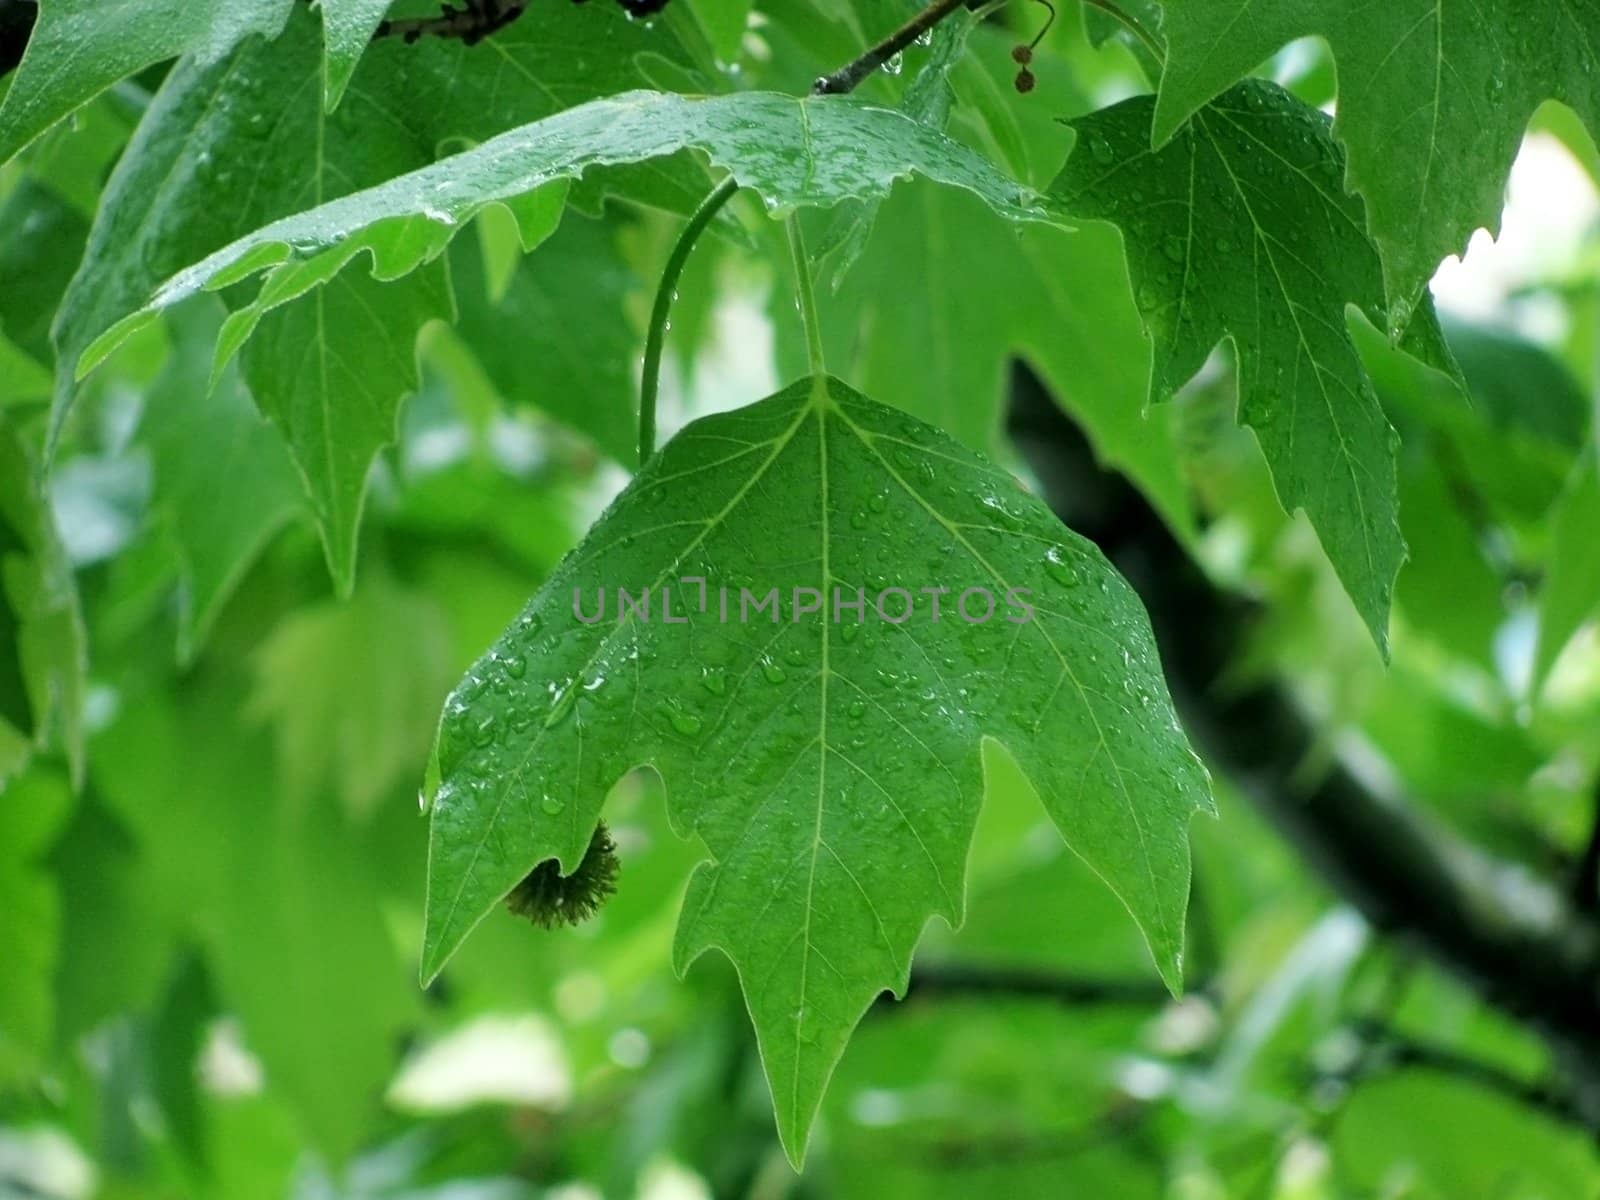 platan tree leaves under rain